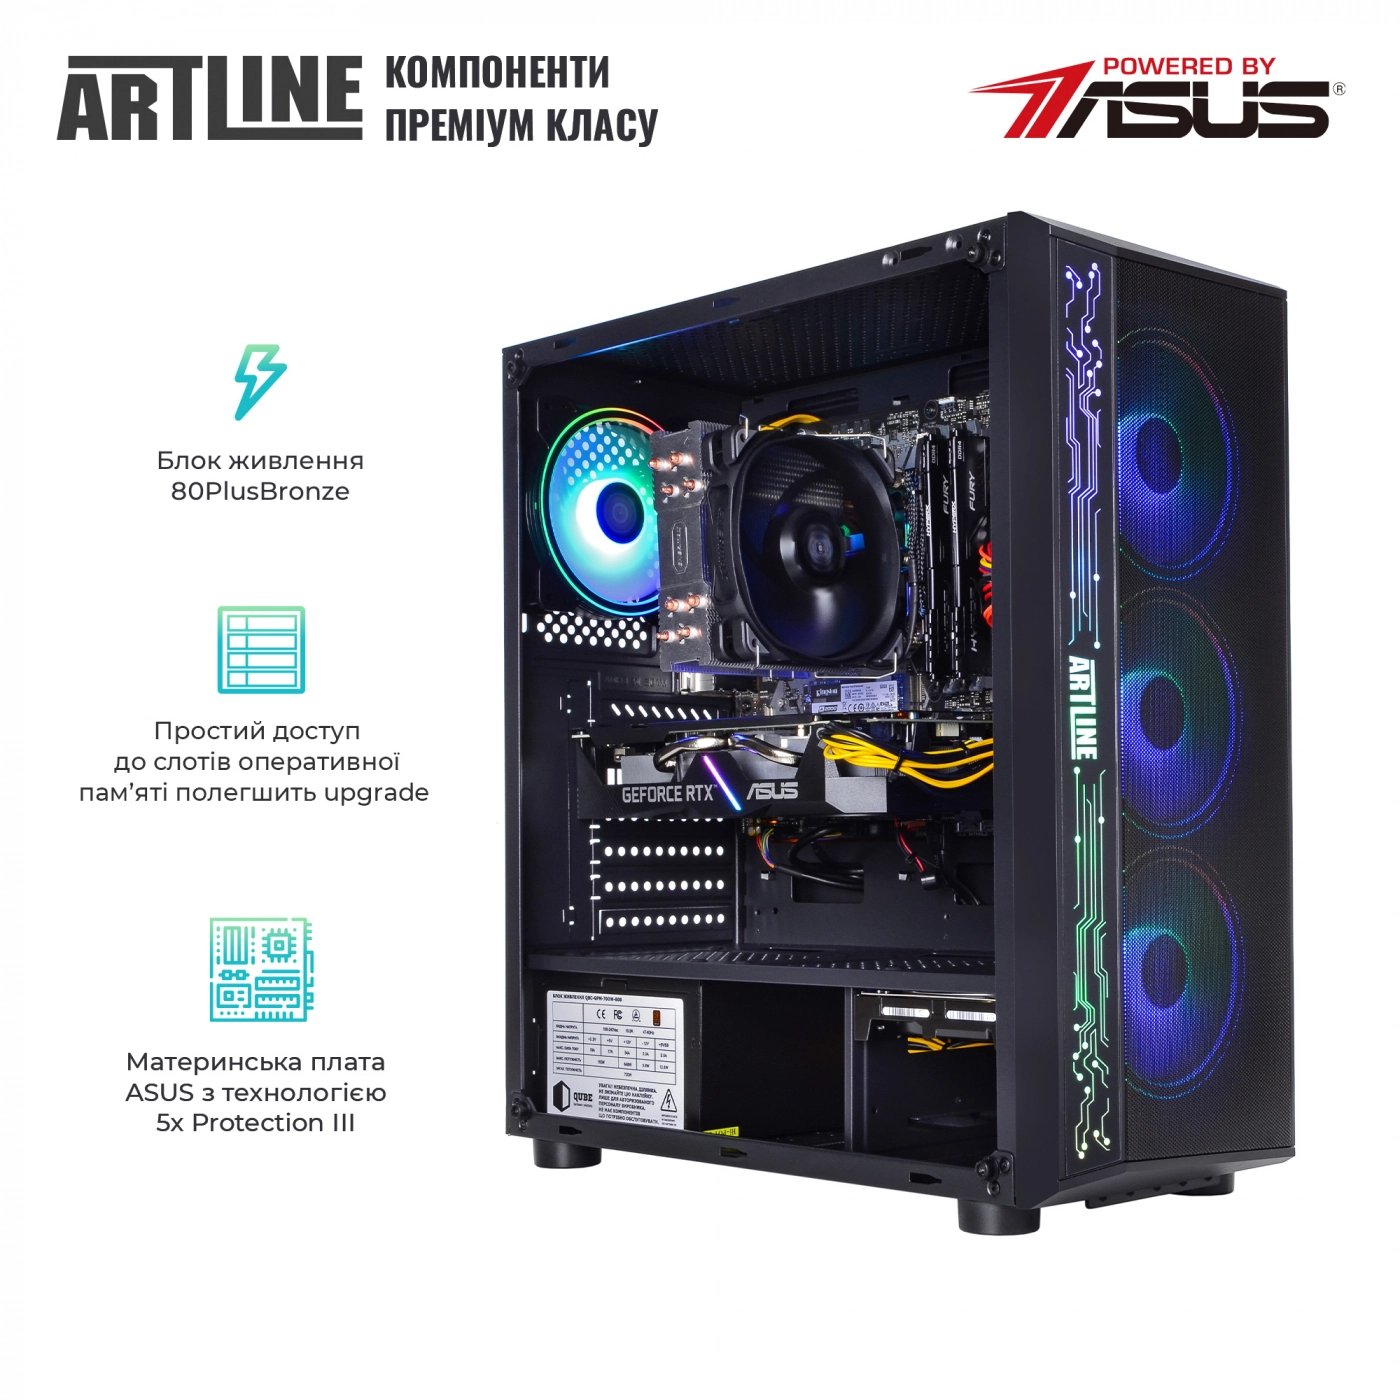 Купить Компьютер ARTLINE Gaming X57v43 - фото 2